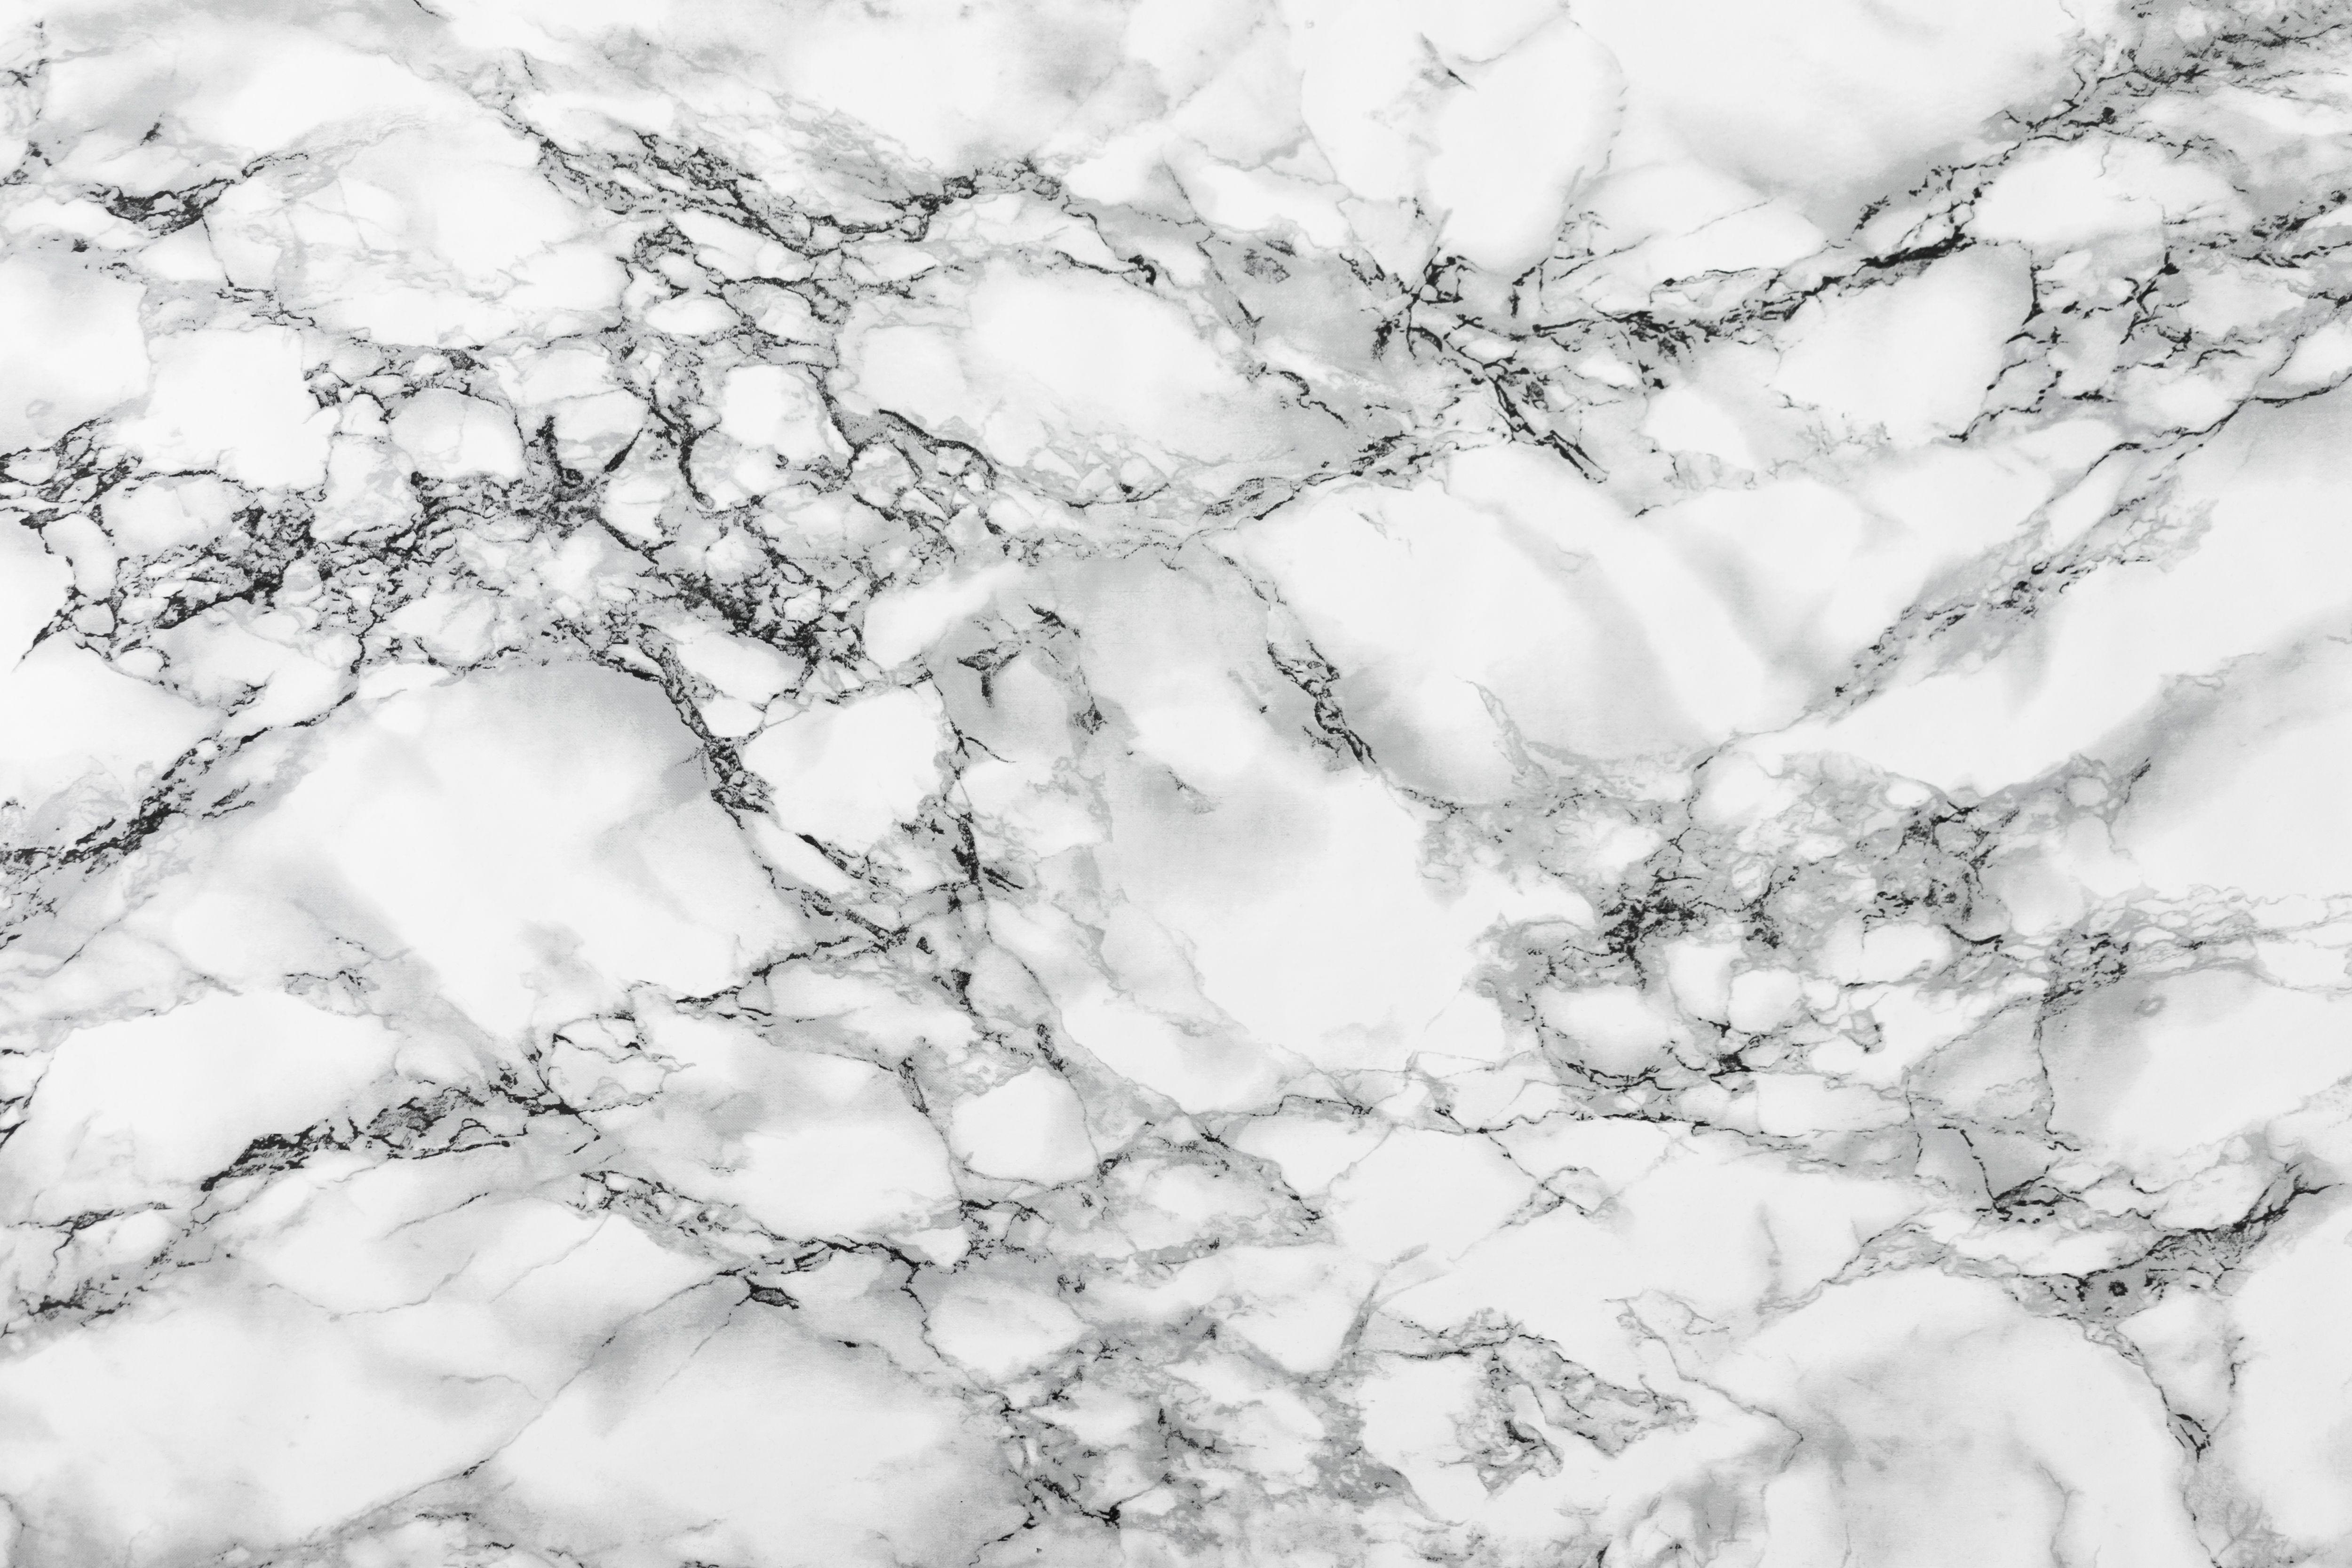 Black and White Marble Wallpapers - Top Hình Ảnh Đẹp